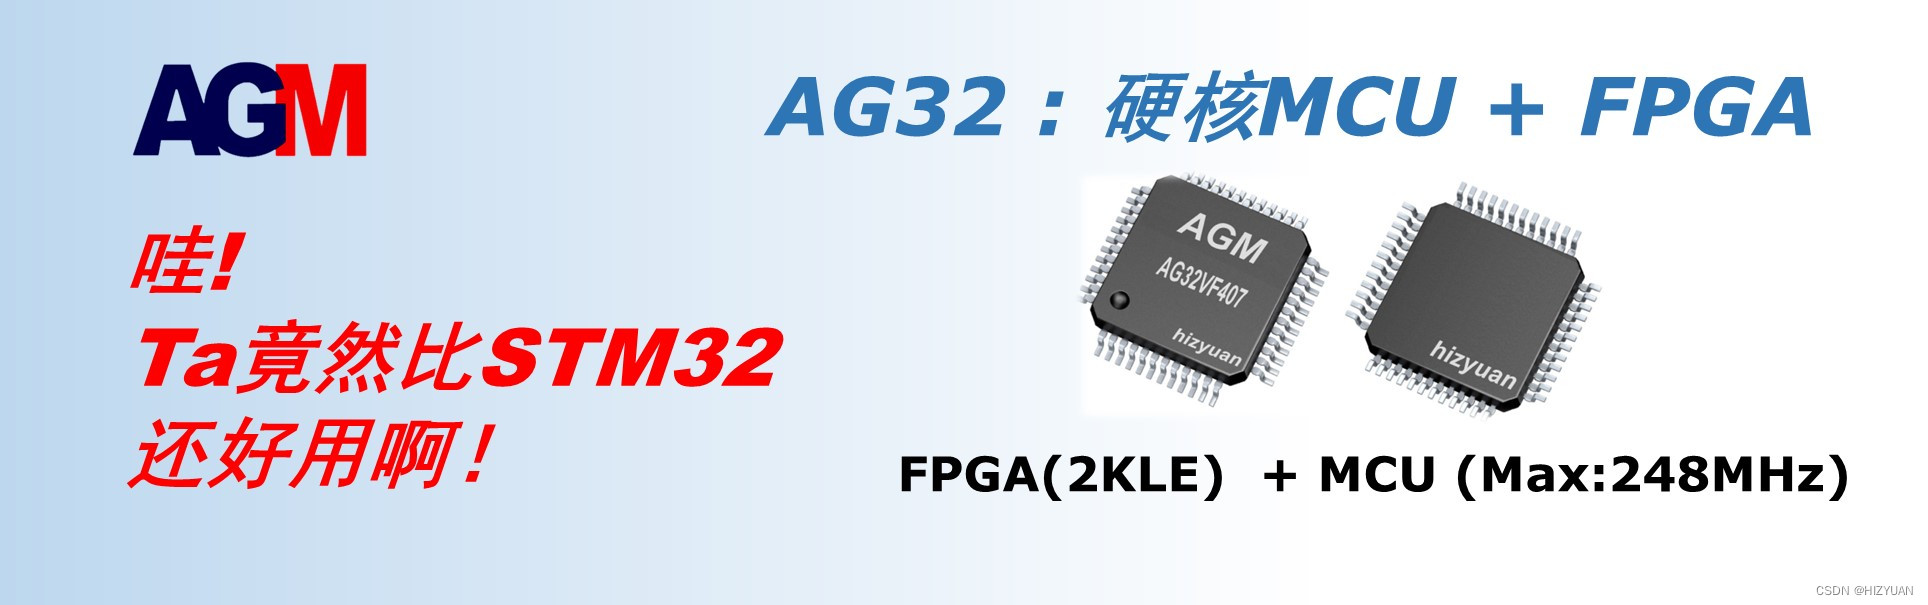 AG32 MCU 如何进入低功耗模式